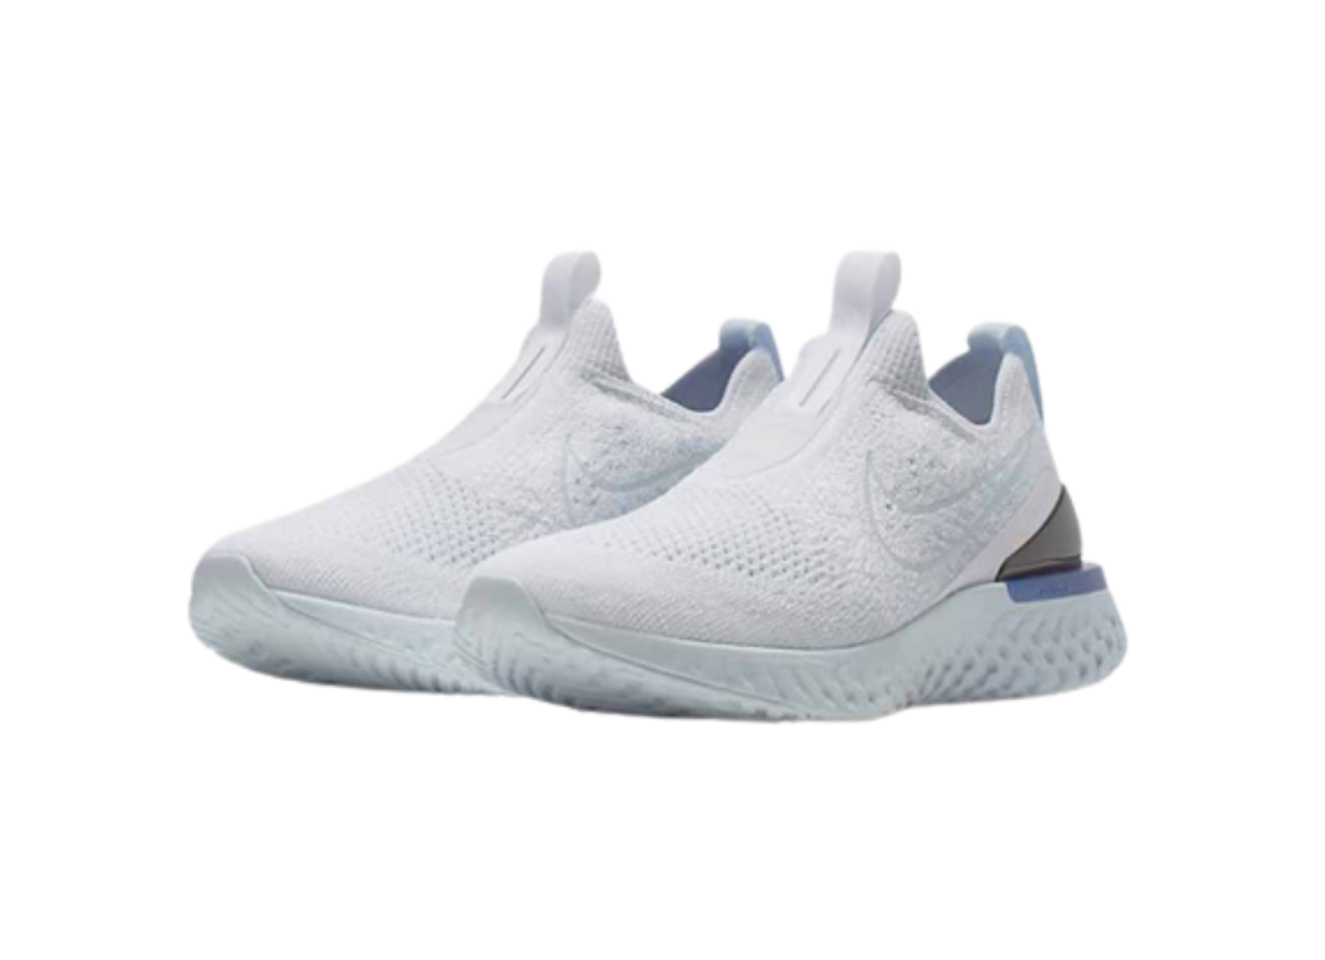 Giày thể thao Nike Epic React Flyknit màu trắng xanh